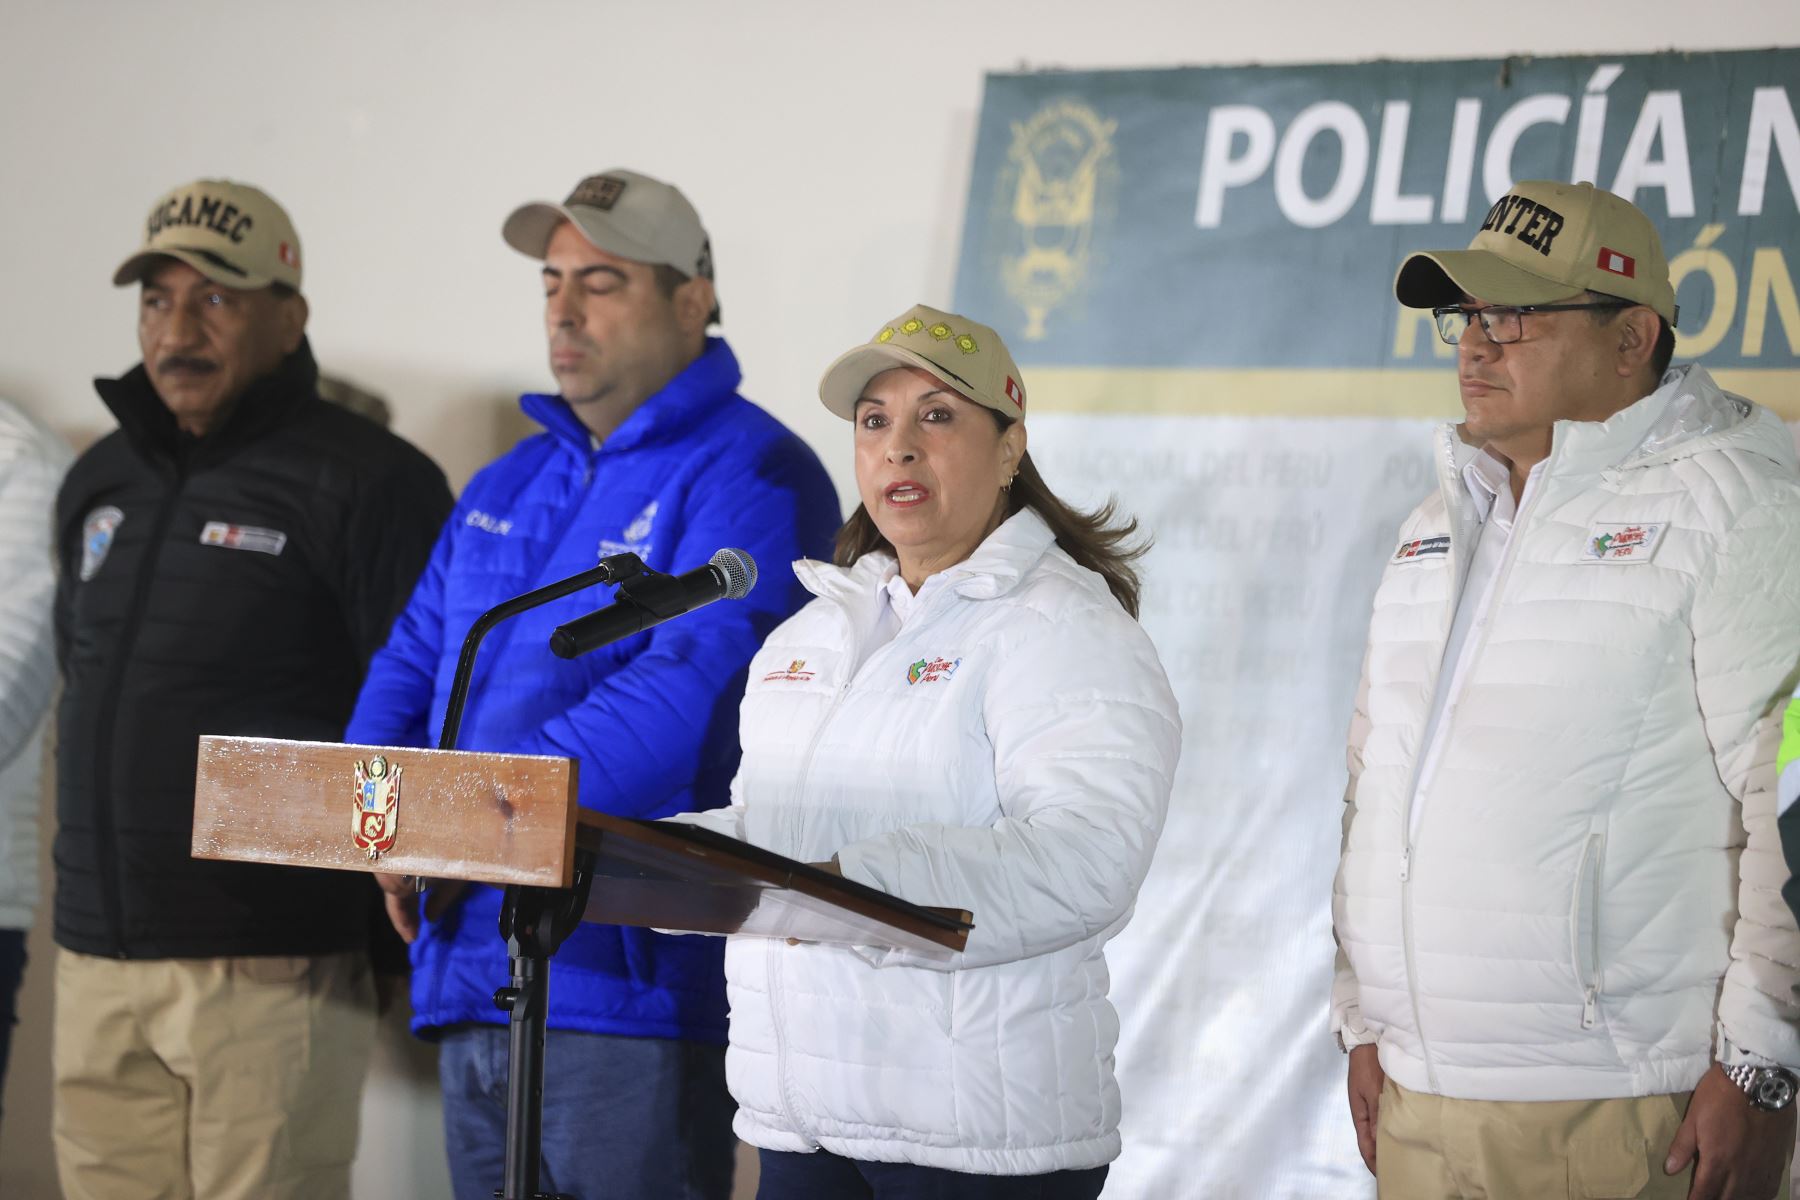 La presidenta Dina Boluarte anuncia operativo antidelinquencia y crimen organizado en todo el país